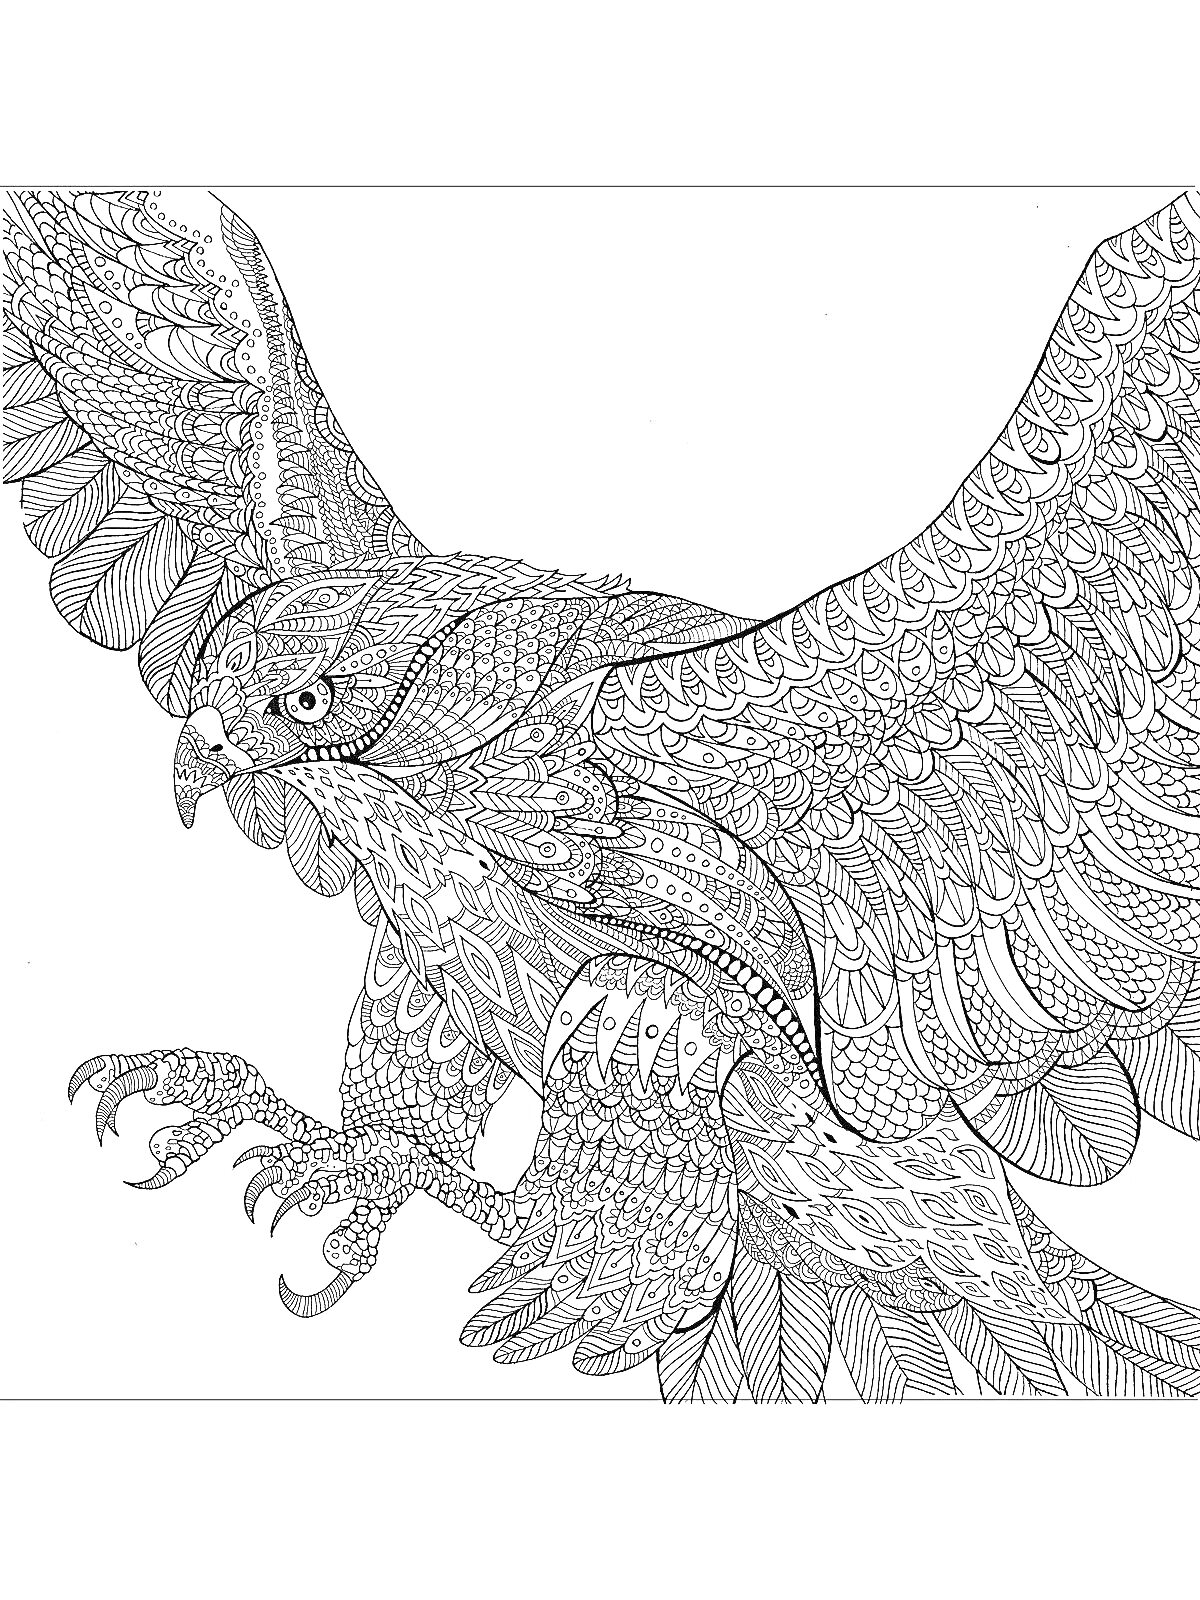 Раскраска Орёл в полёте с вытянутыми когтями, сложные узоры на оперении